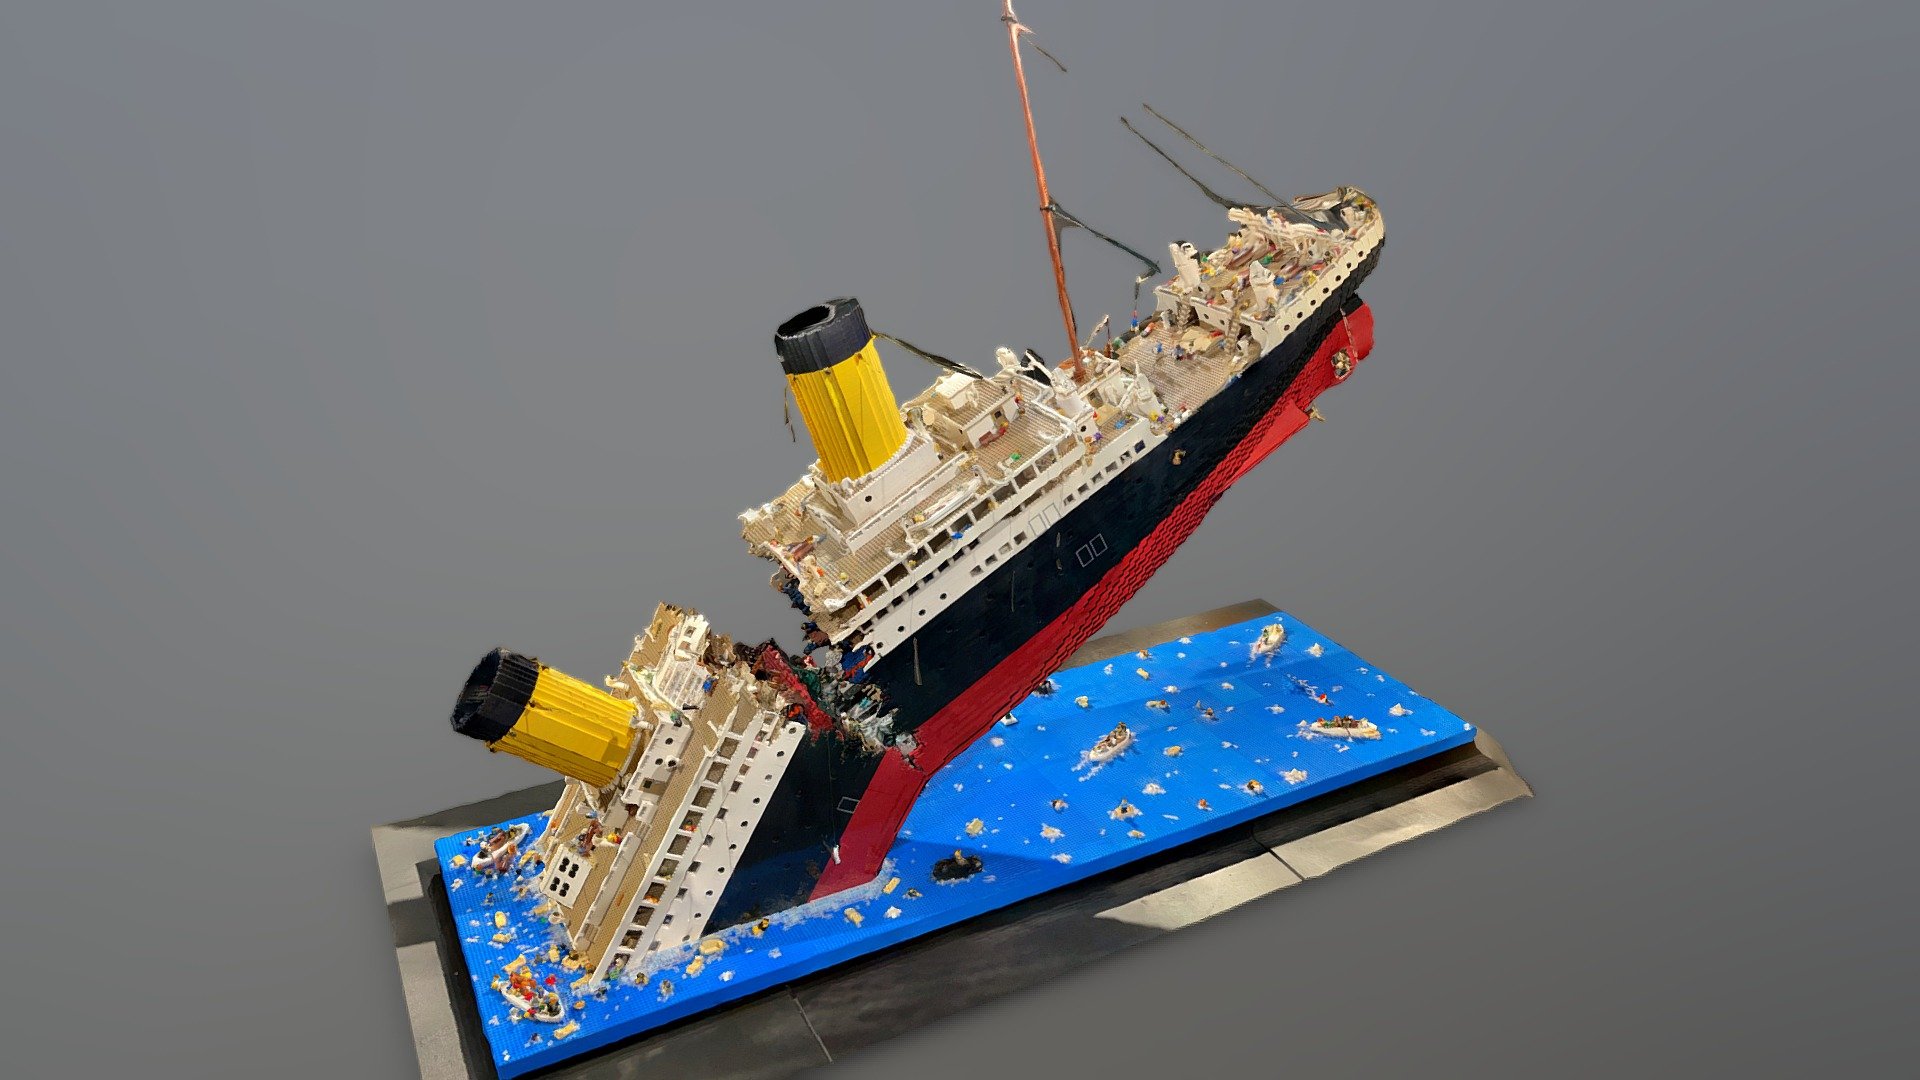 Lego Titanic Model Sinking